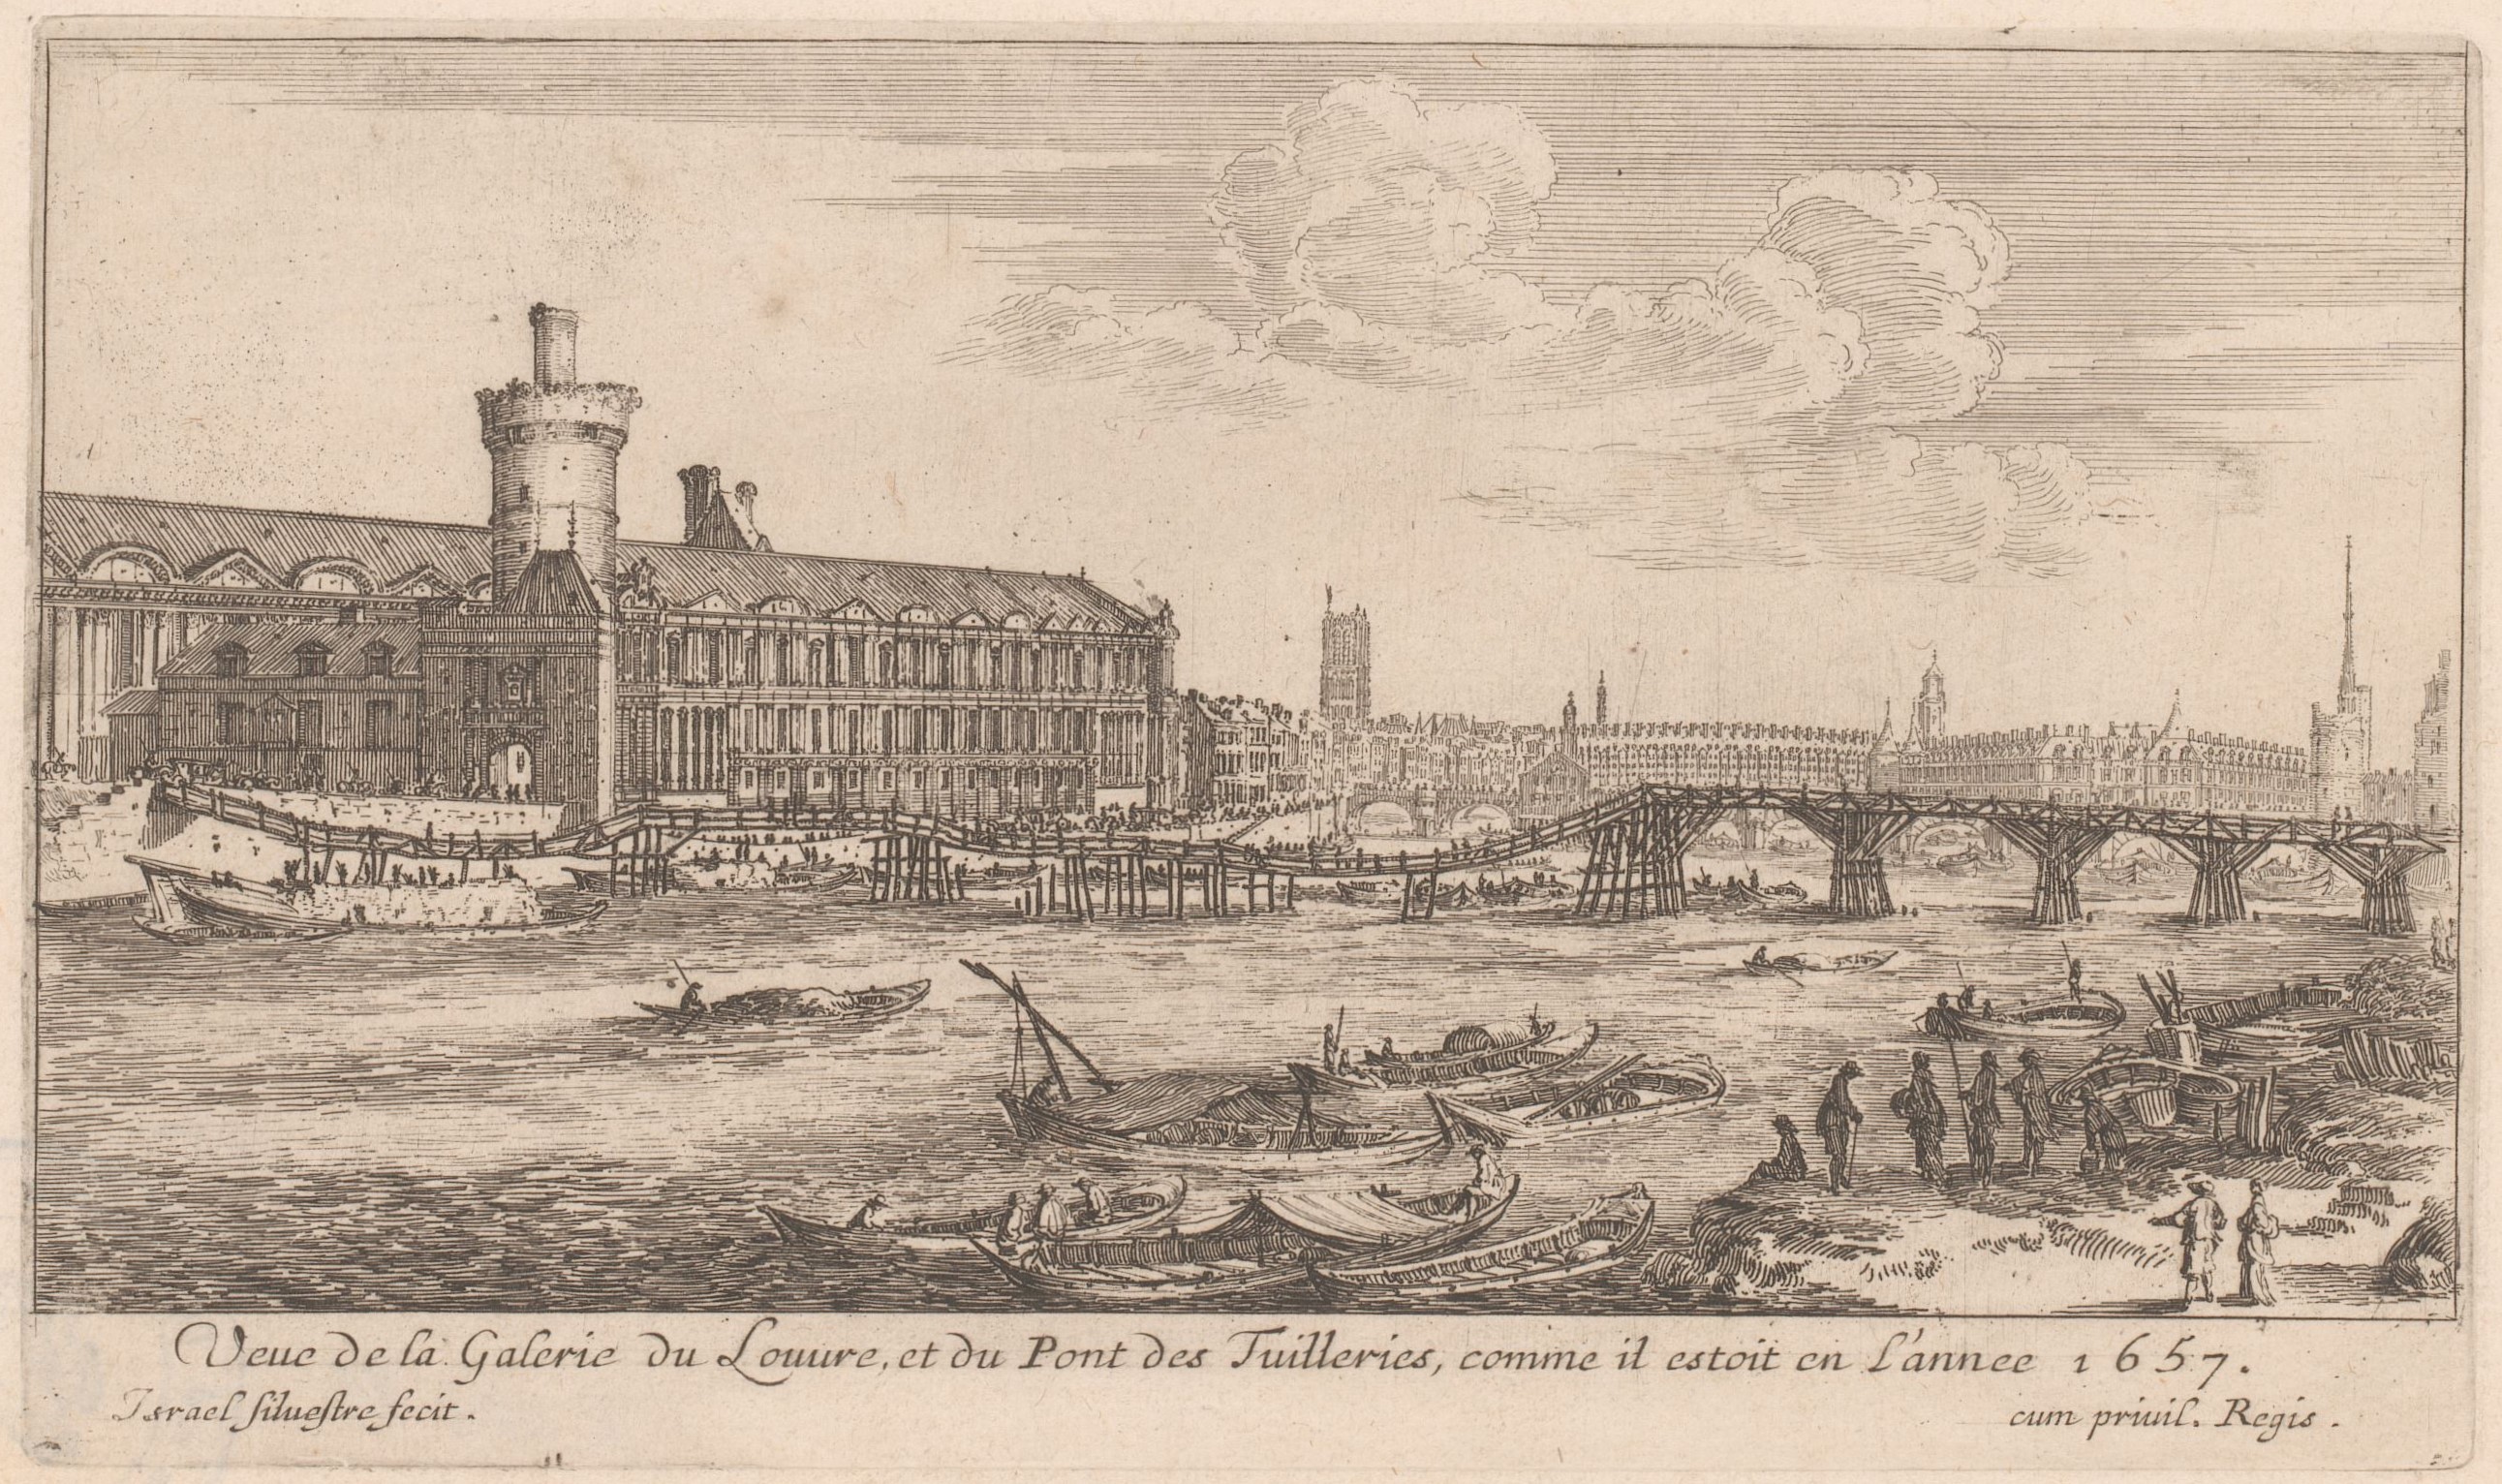 Israël Silvestre : Veue de la Galerie du Louvre, et du Pont des Tuilleries, comme il estoit en l'année 1657.